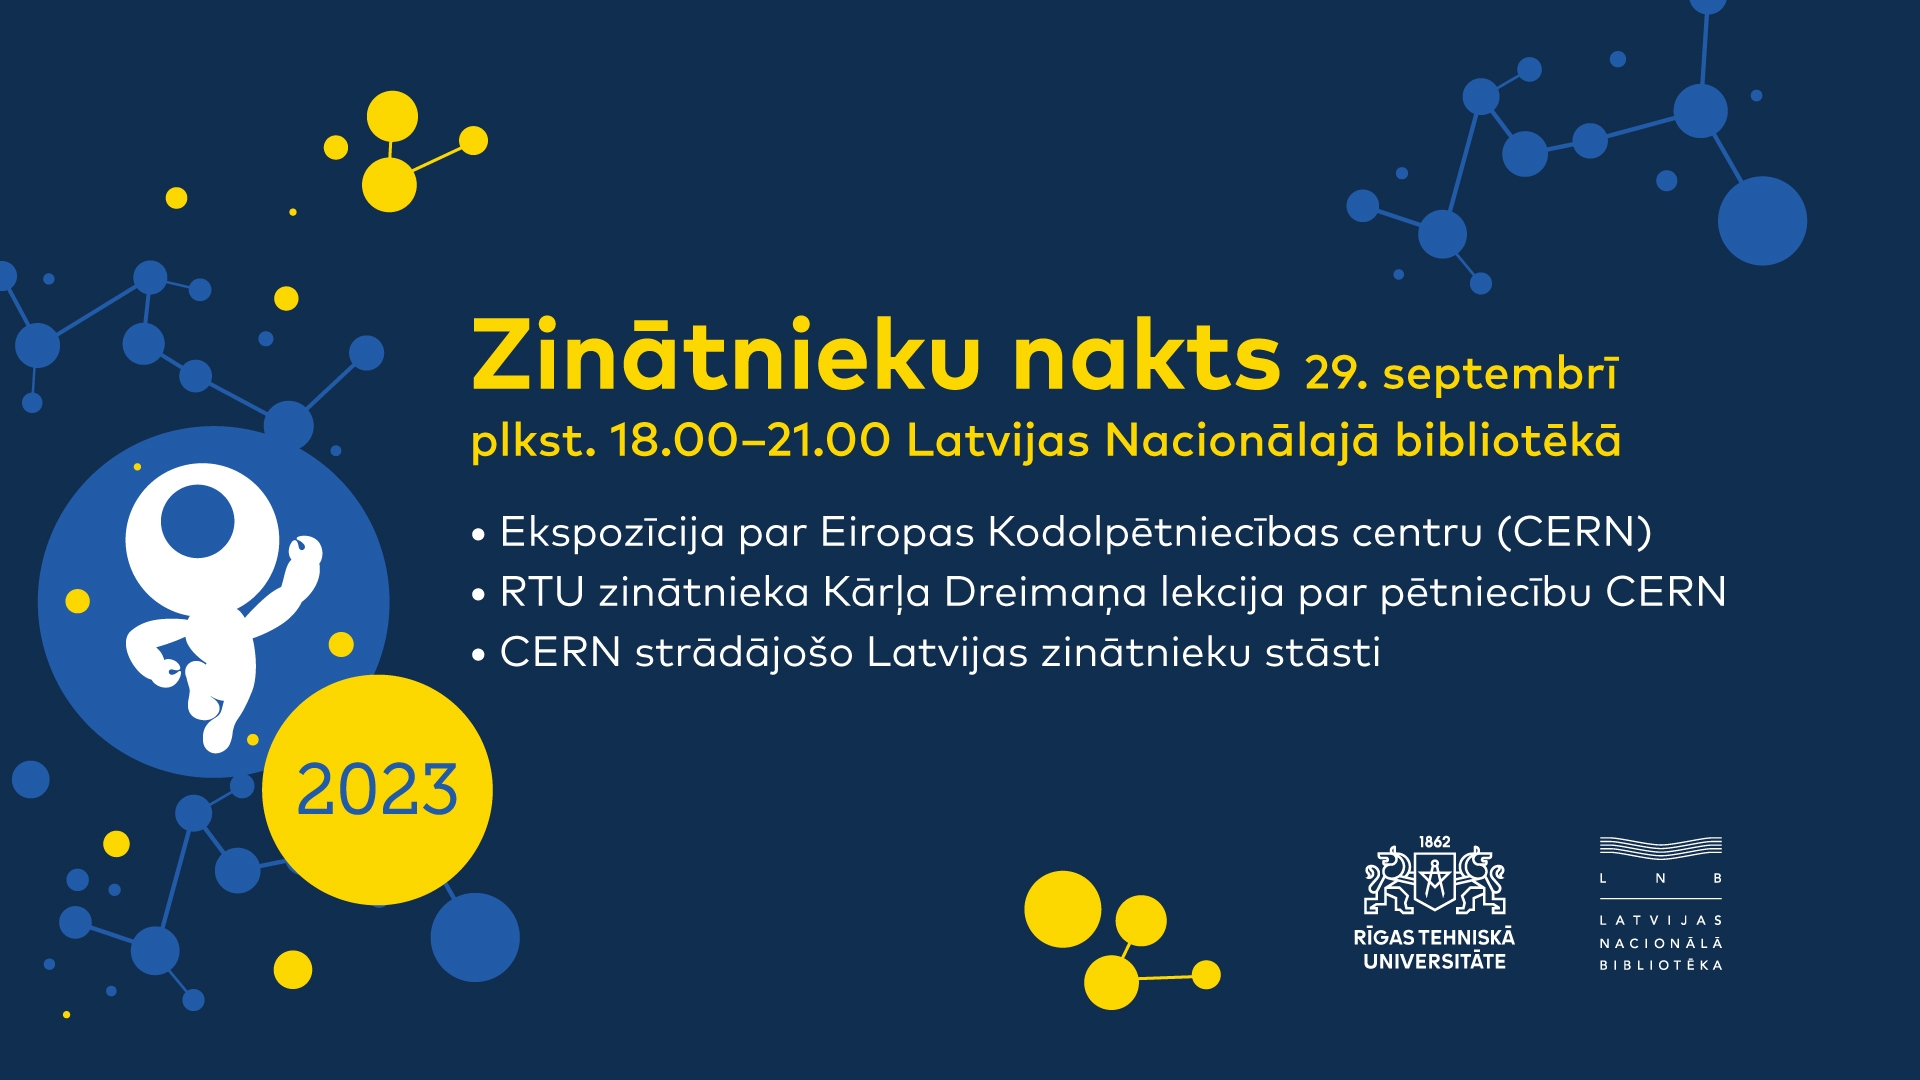 Zinātnieku naktī Latvijas Nacionālajā bibliotēkā varēs izzināt Visuma noslēpumus un iepazīties ar CERN strādājošo zinātnieku darbu